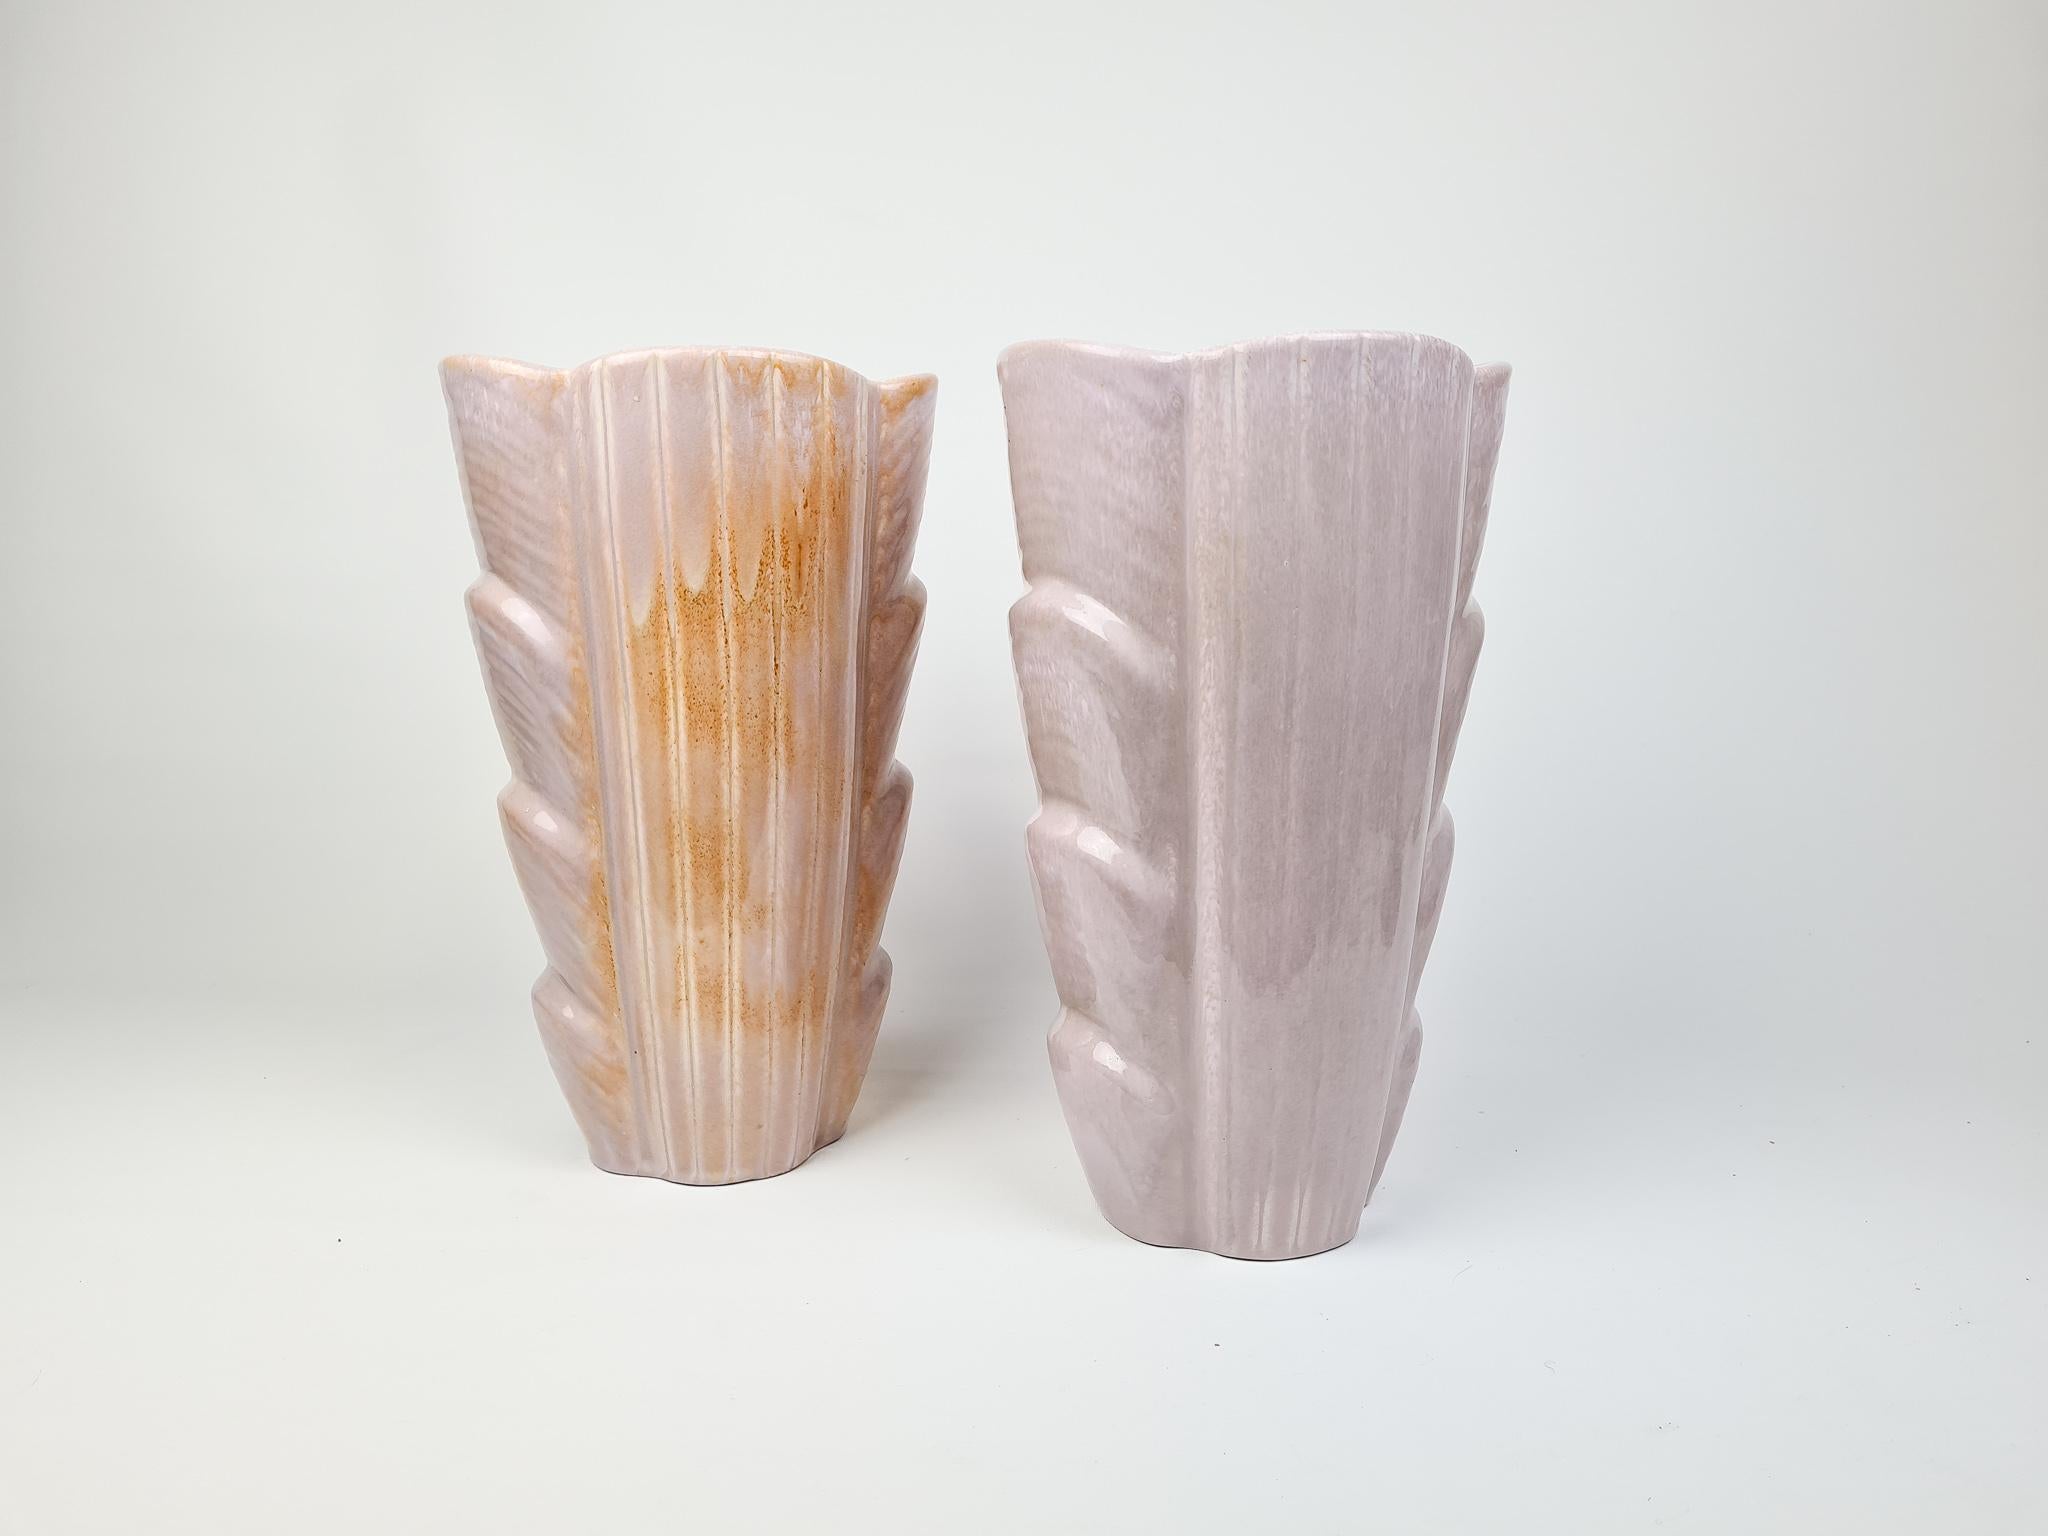 Außergewöhnliche Qualität über diese Vasen in Schweden in Rörstrand Fabrik hergestellt und von Gunnar Nylund entworfen. Sie wurde in den 1950er Jahren hergestellt und hat eine schöne Schimmerglasur mit feinen Linien.

Besonders guter